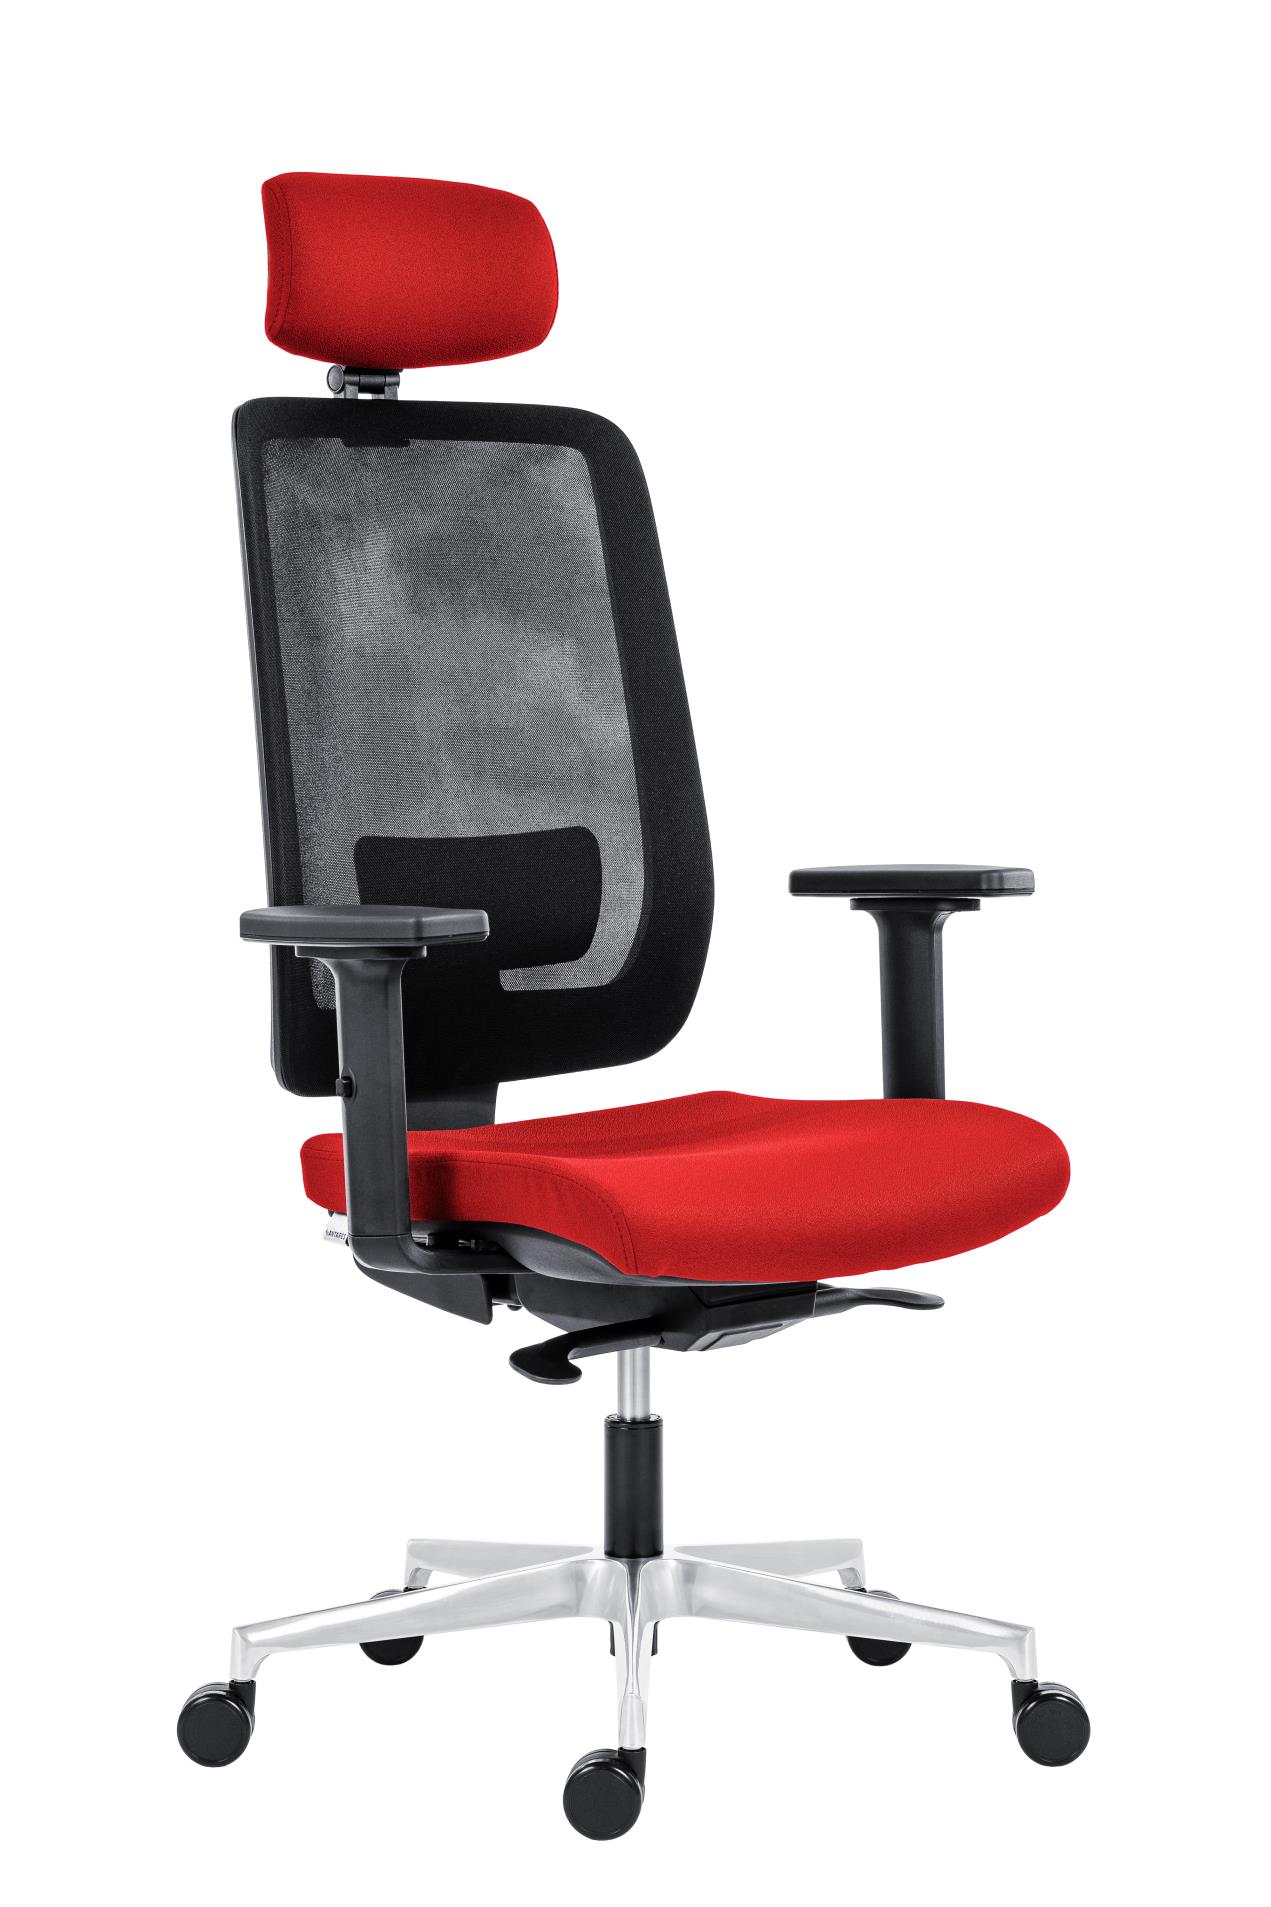 Antares Kancelářská židle Eclipse Net - s podhlavníkem, synchronní, červená